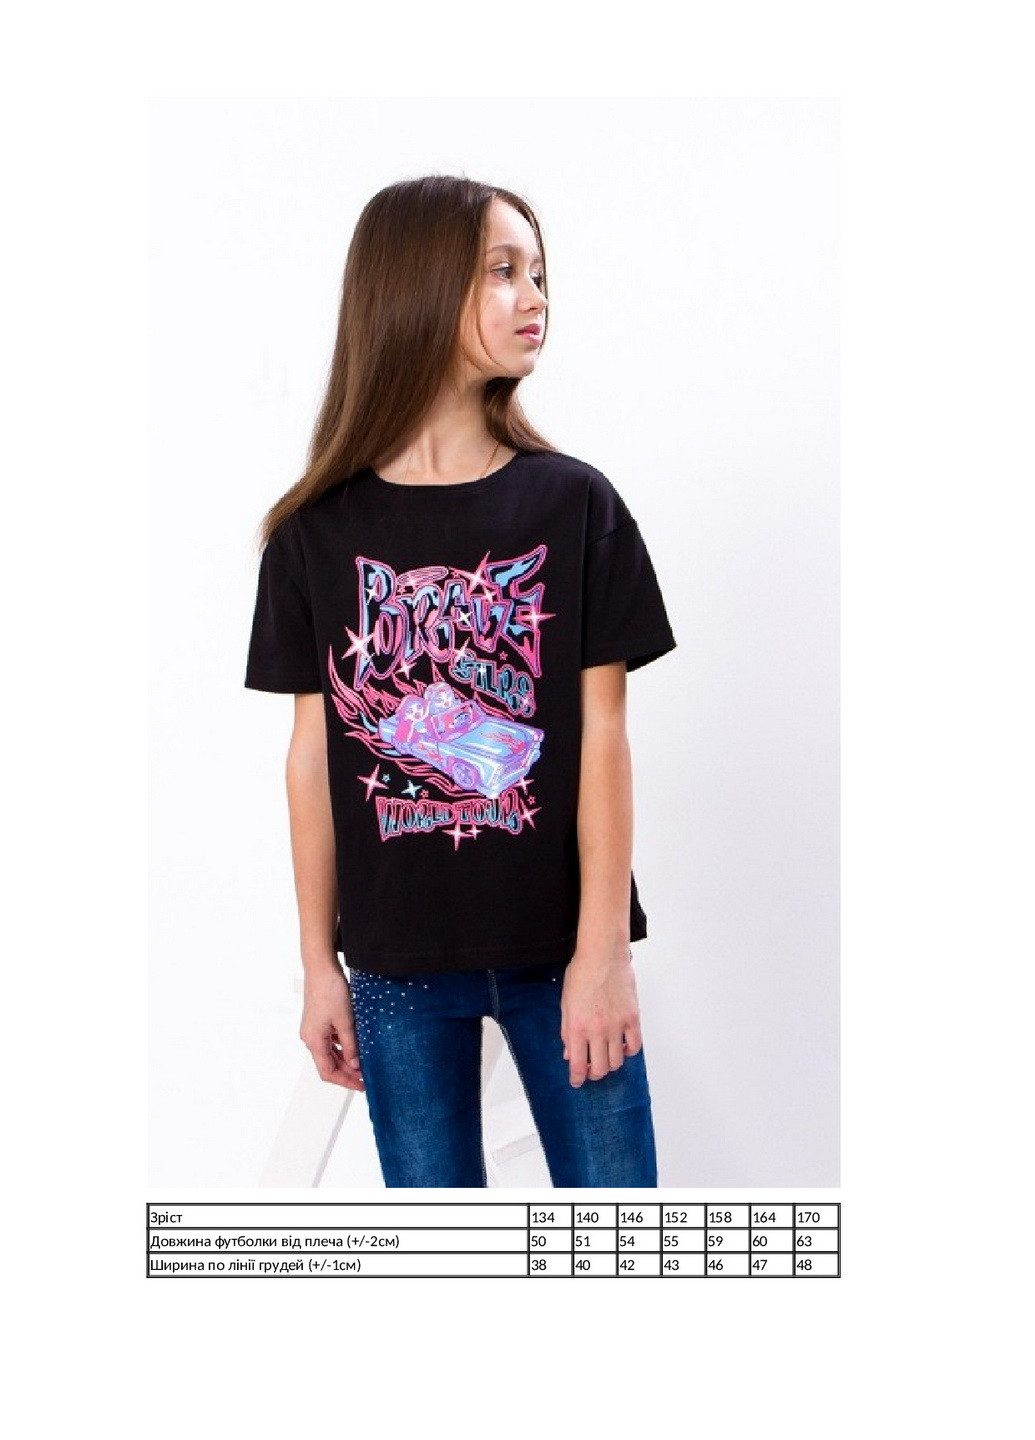 Чорна літня футболка для дівчинки (підліткова) KINDER MODE